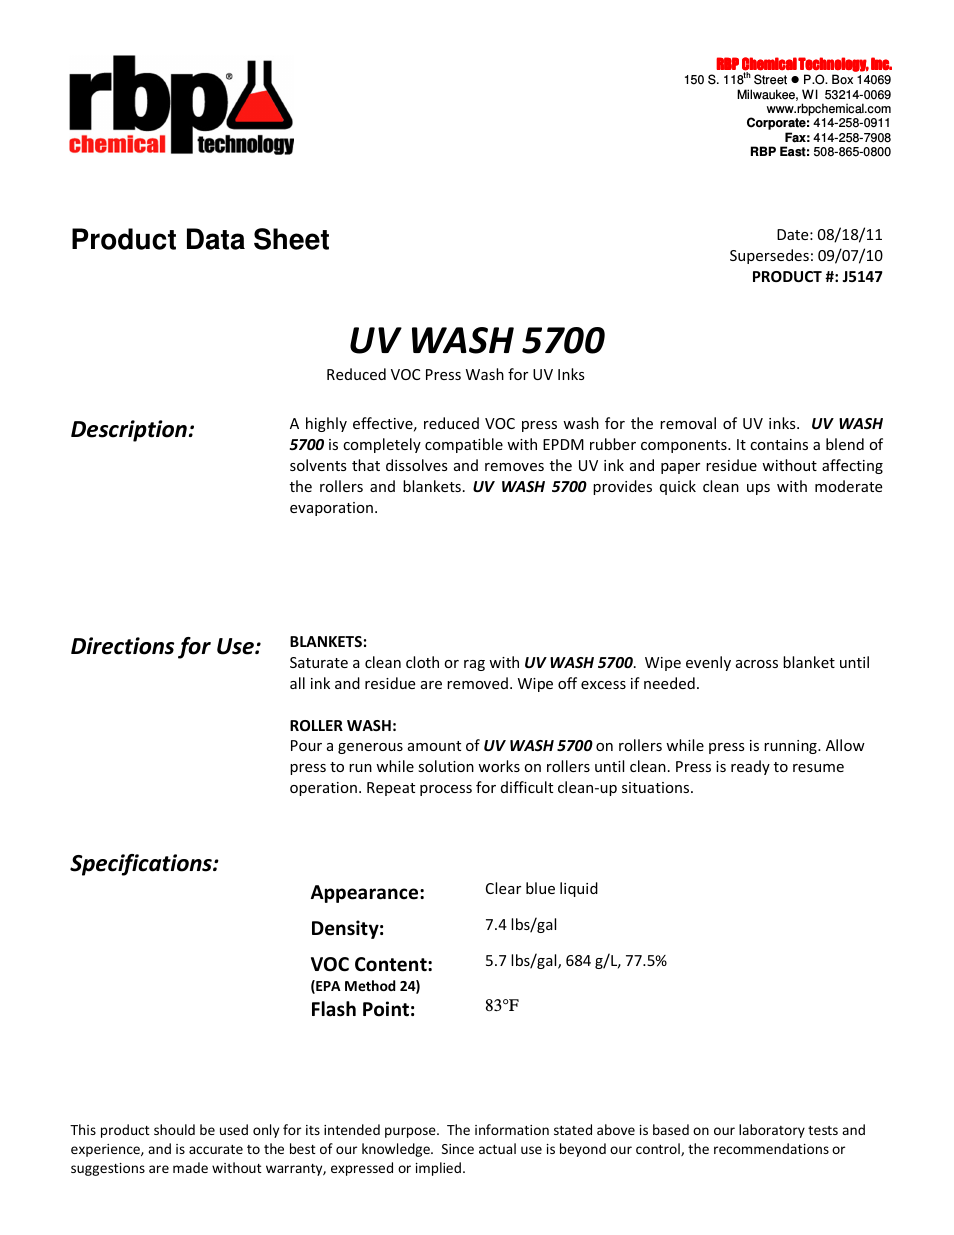 J5147 UV WASH 5700